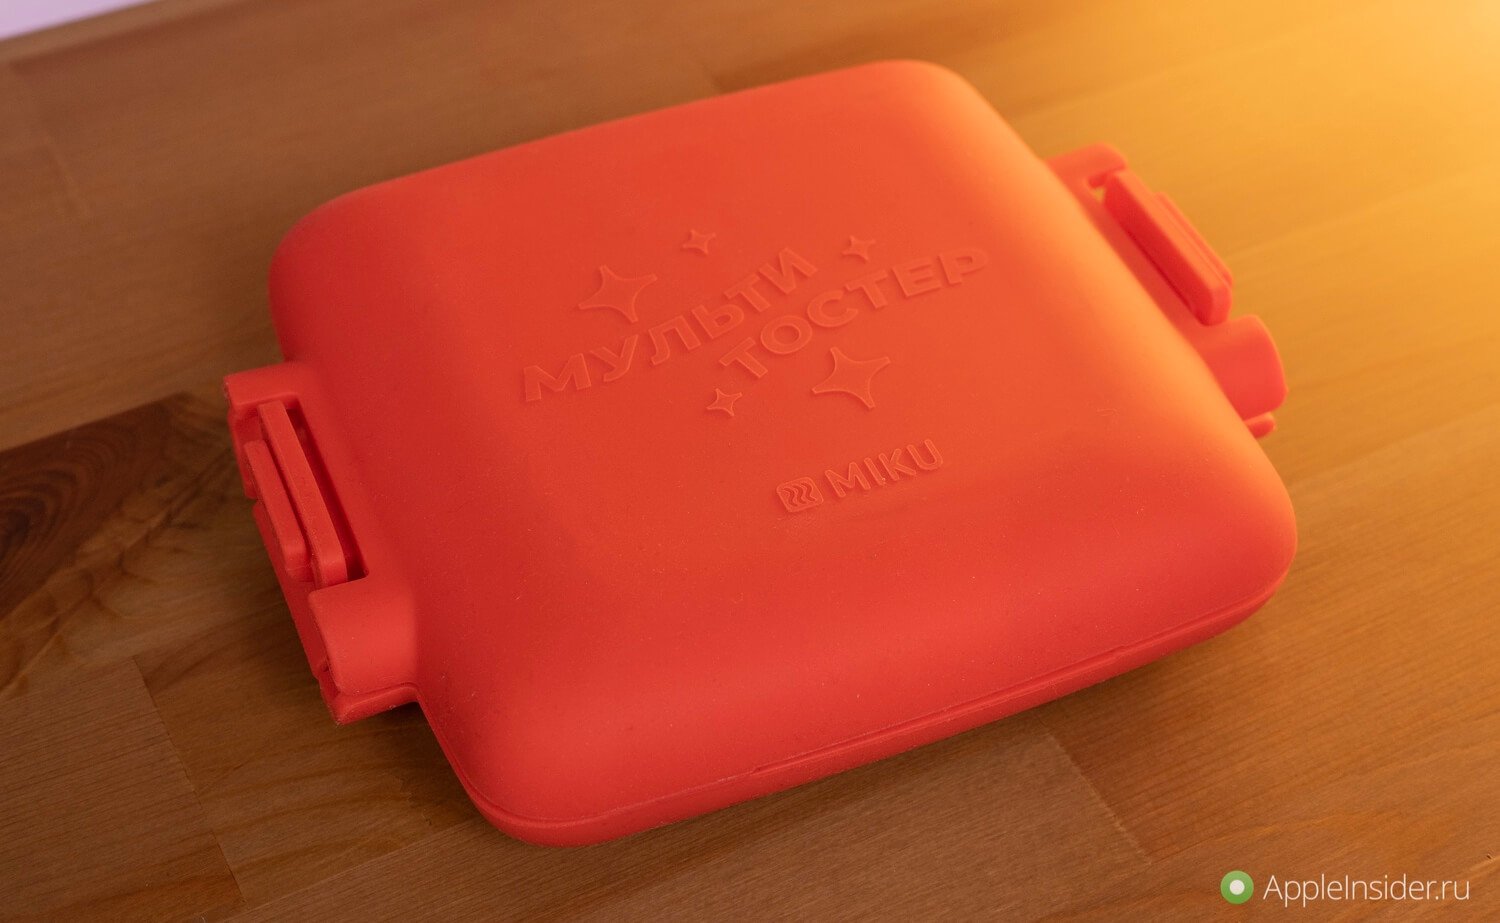 Поджаренные сэндвичи в микроволновой печи. Силиконовая накладка защитит от ожогов. Фото.